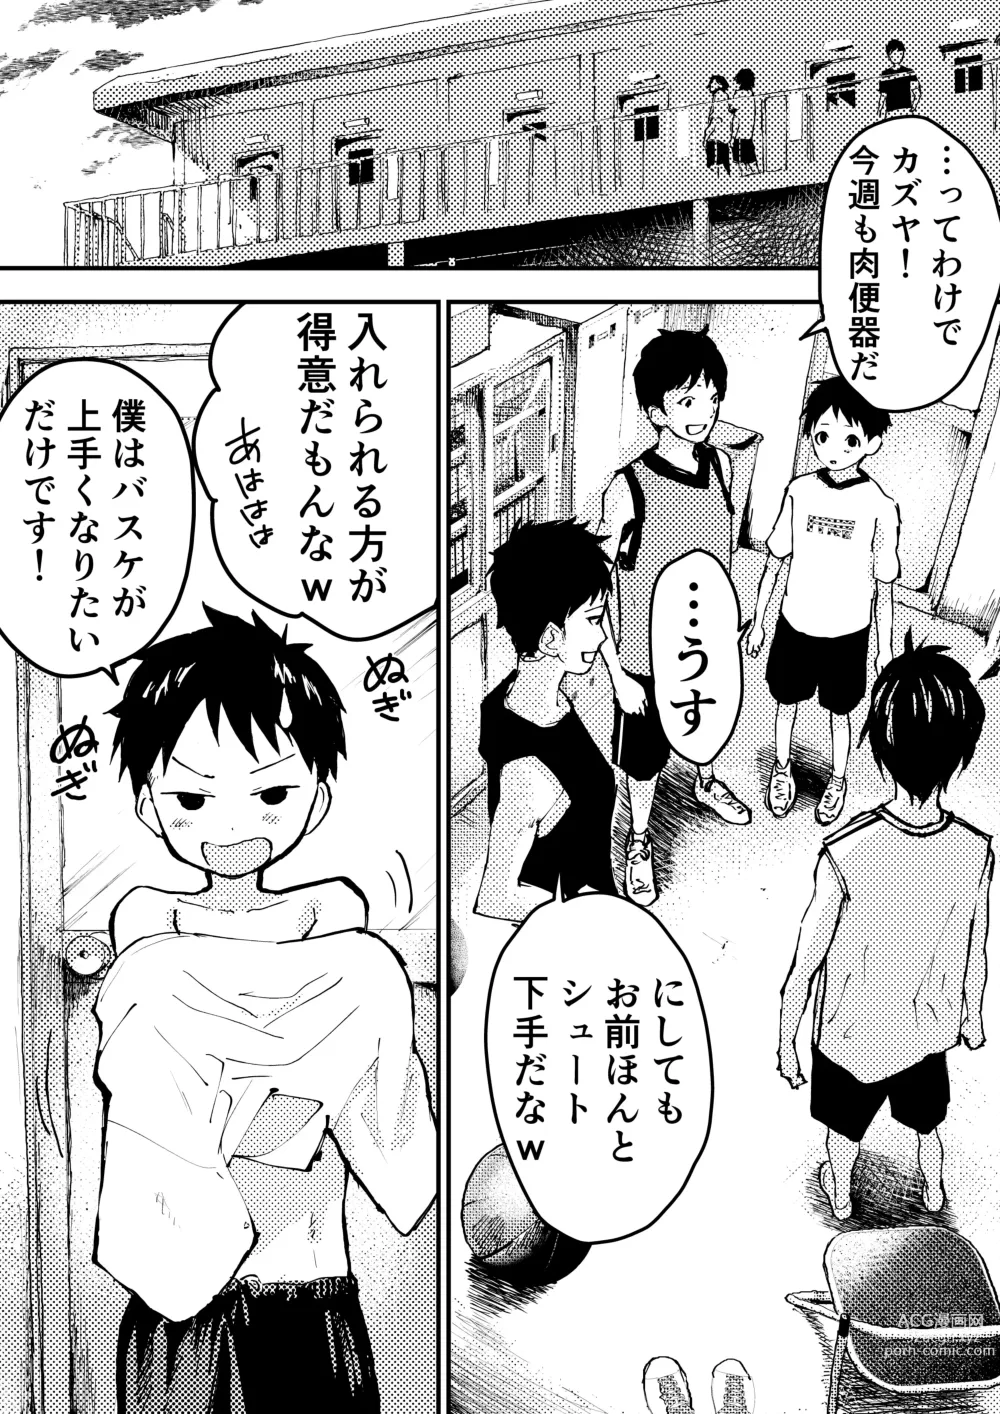 Page 6 of doujinshi Baske ga Heta dakara Shikata ga nai!